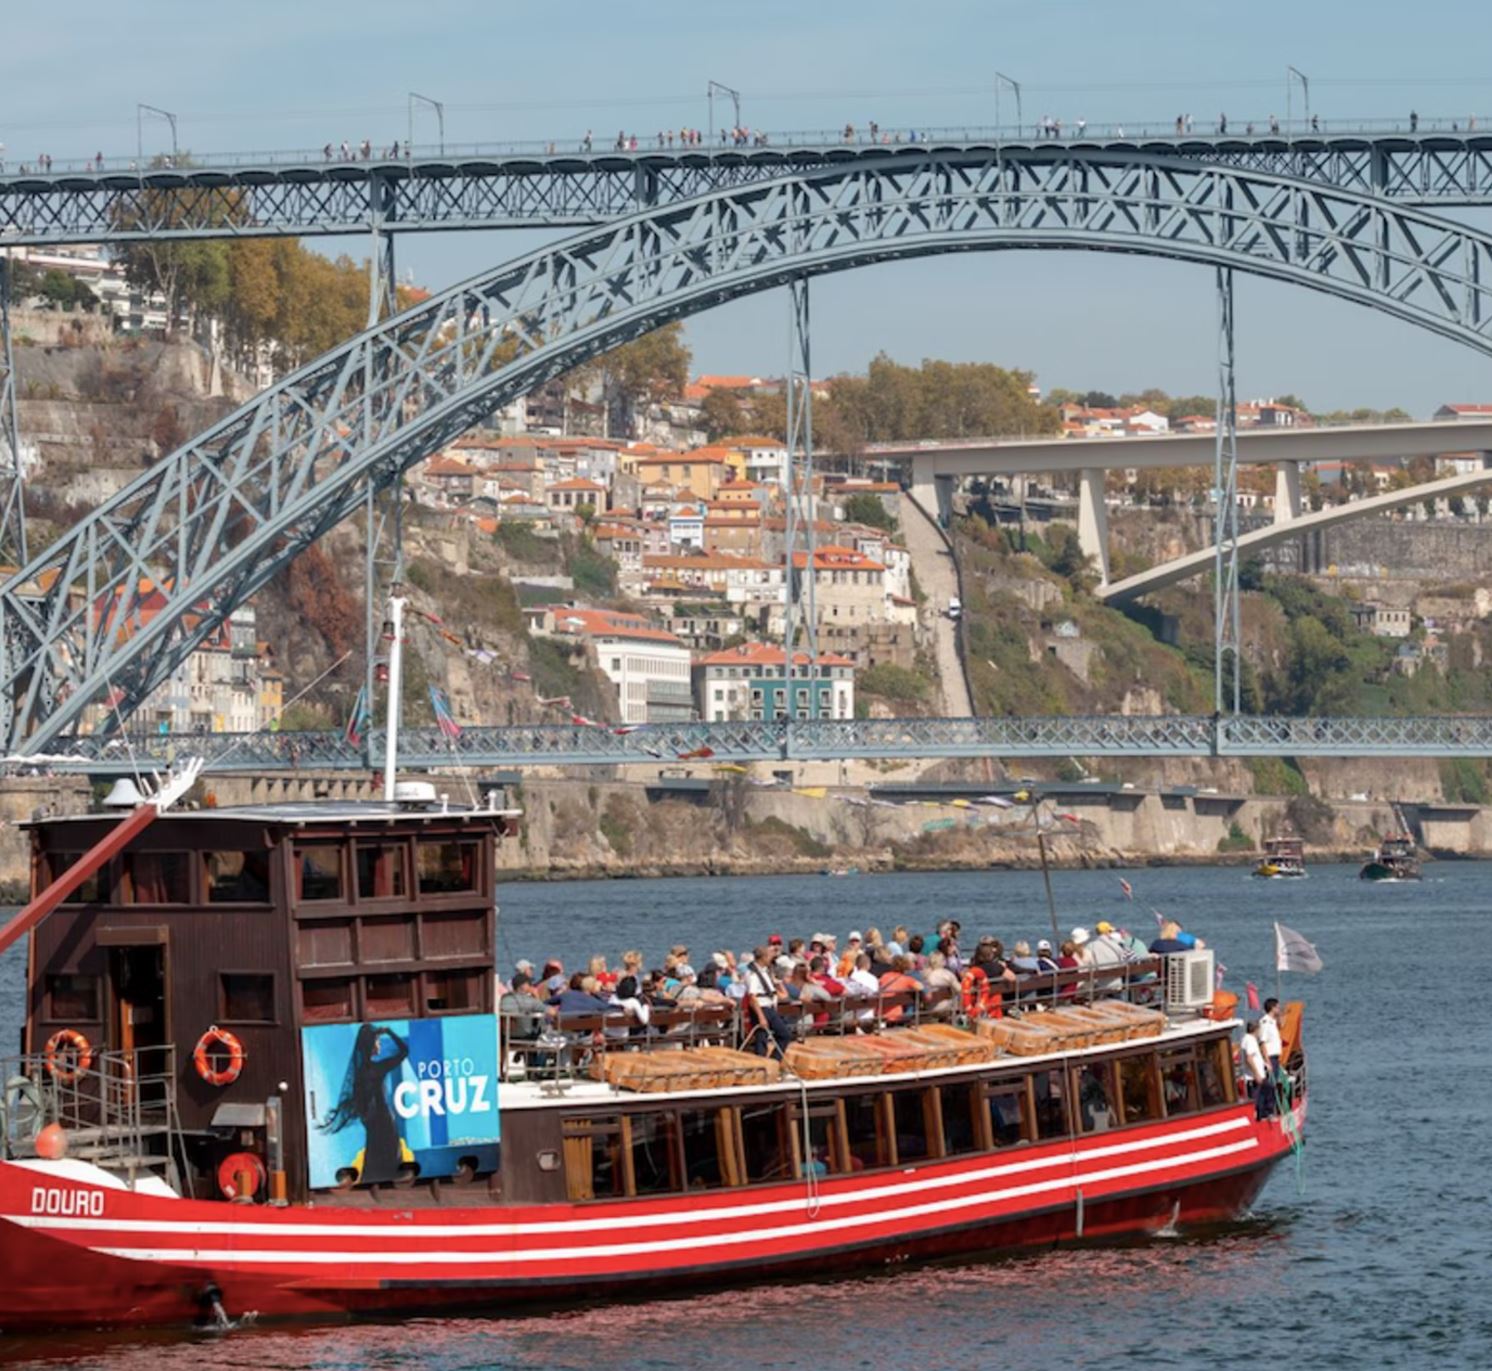 Cruzeiro das 6 pontes no Porto